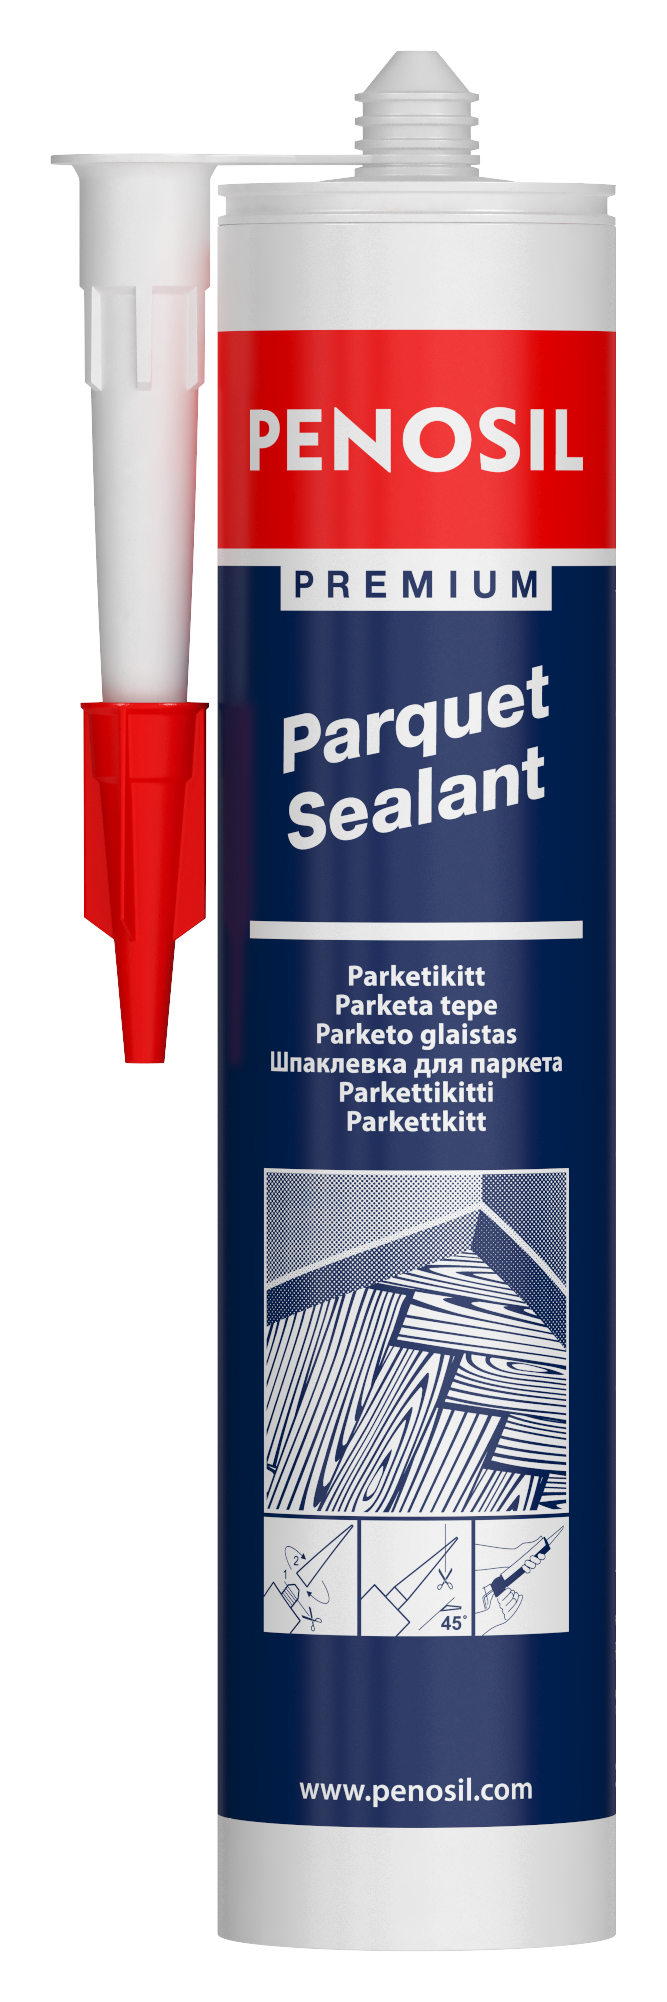 PENOSIL Premium Parquet Sealant for parquet and laminate floors